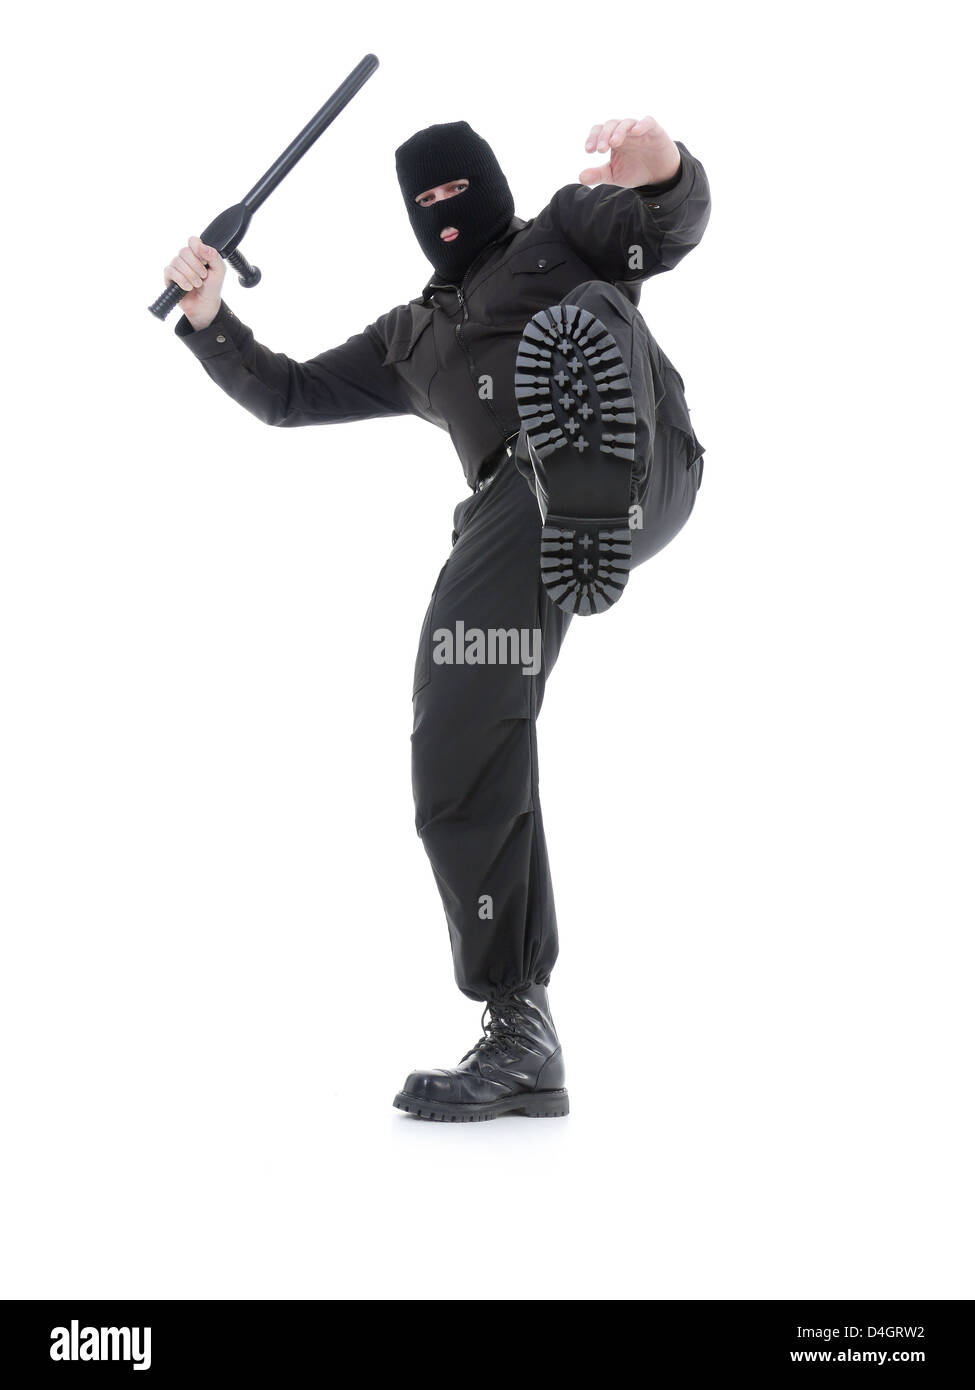 La police anti-terroriste mec uniforme noir et masque noir faire un kick, shot on white Banque D'Images